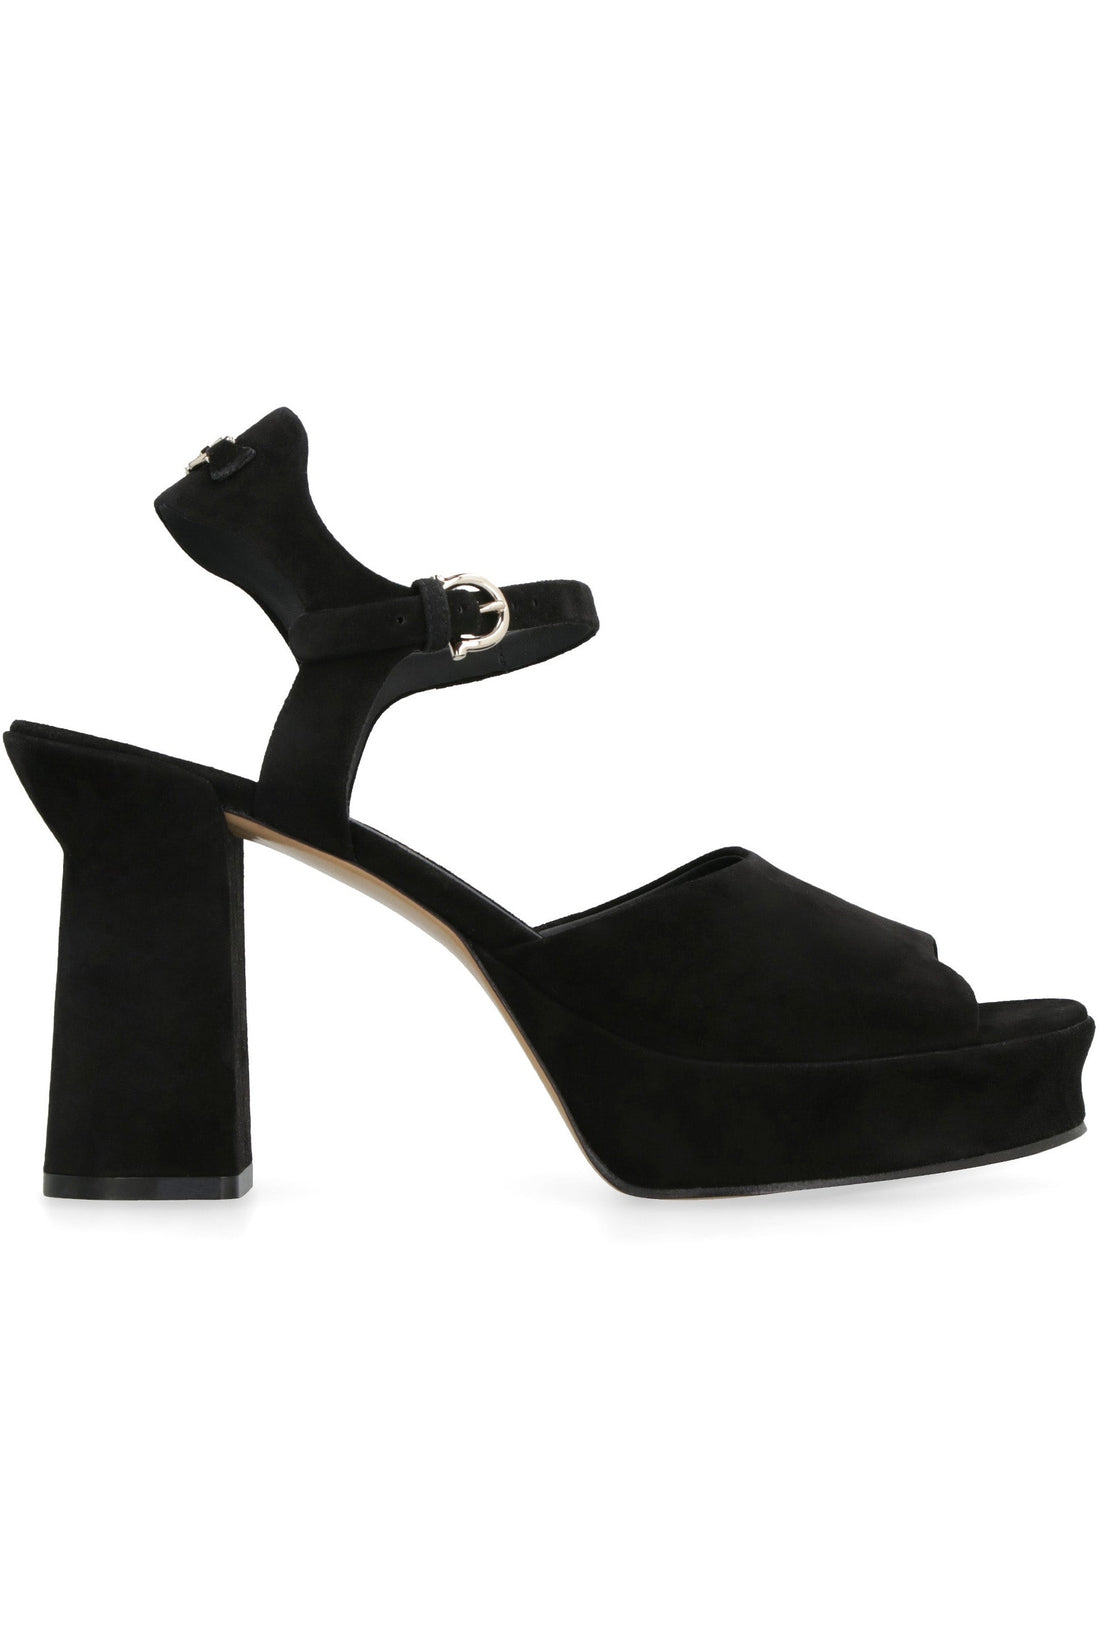 FERRAGAMO-OUTLET-SALE-Sasha leather platform sandals-ARCHIVIST